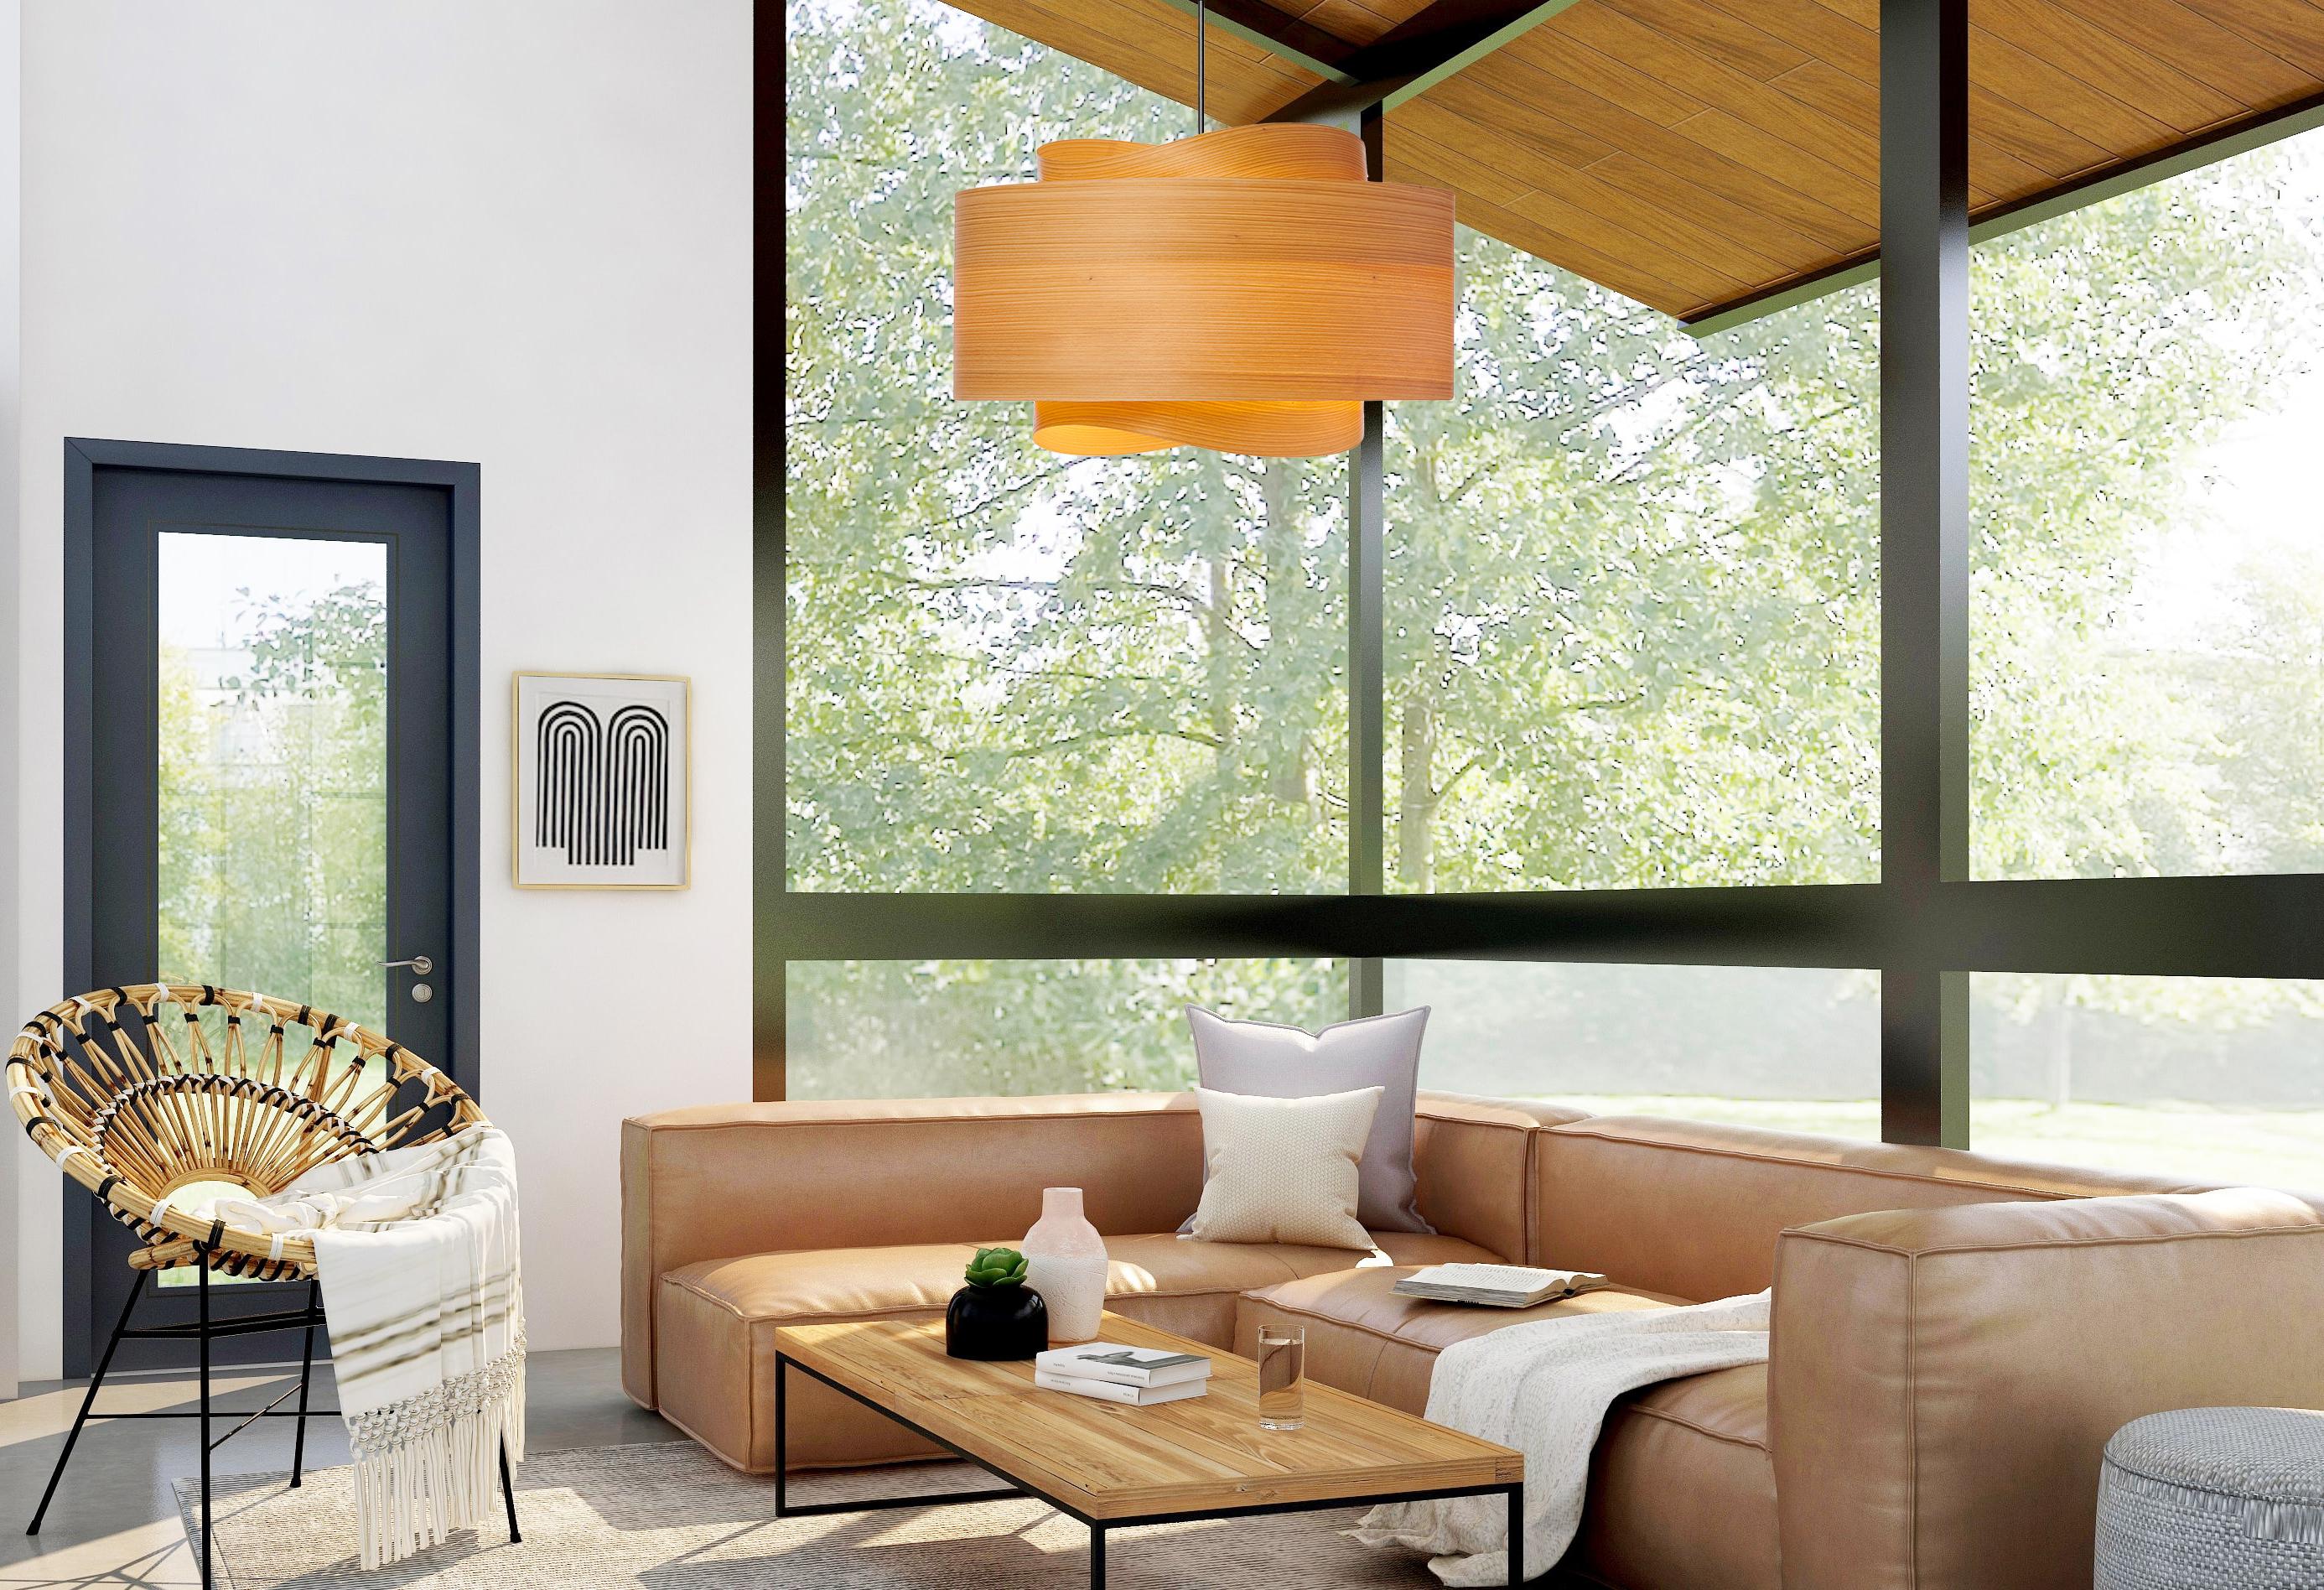 Die Leuchte BOWEN ist ein beeindruckendes Beispiel für zeitgenössisches Mid-Century Modern Design. Mit ihrer minimalistischen Silhouette, den warmen Holztönen und der einzigartigen Form verleiht diese Pendelleuchte jedem Raum einen Hauch von